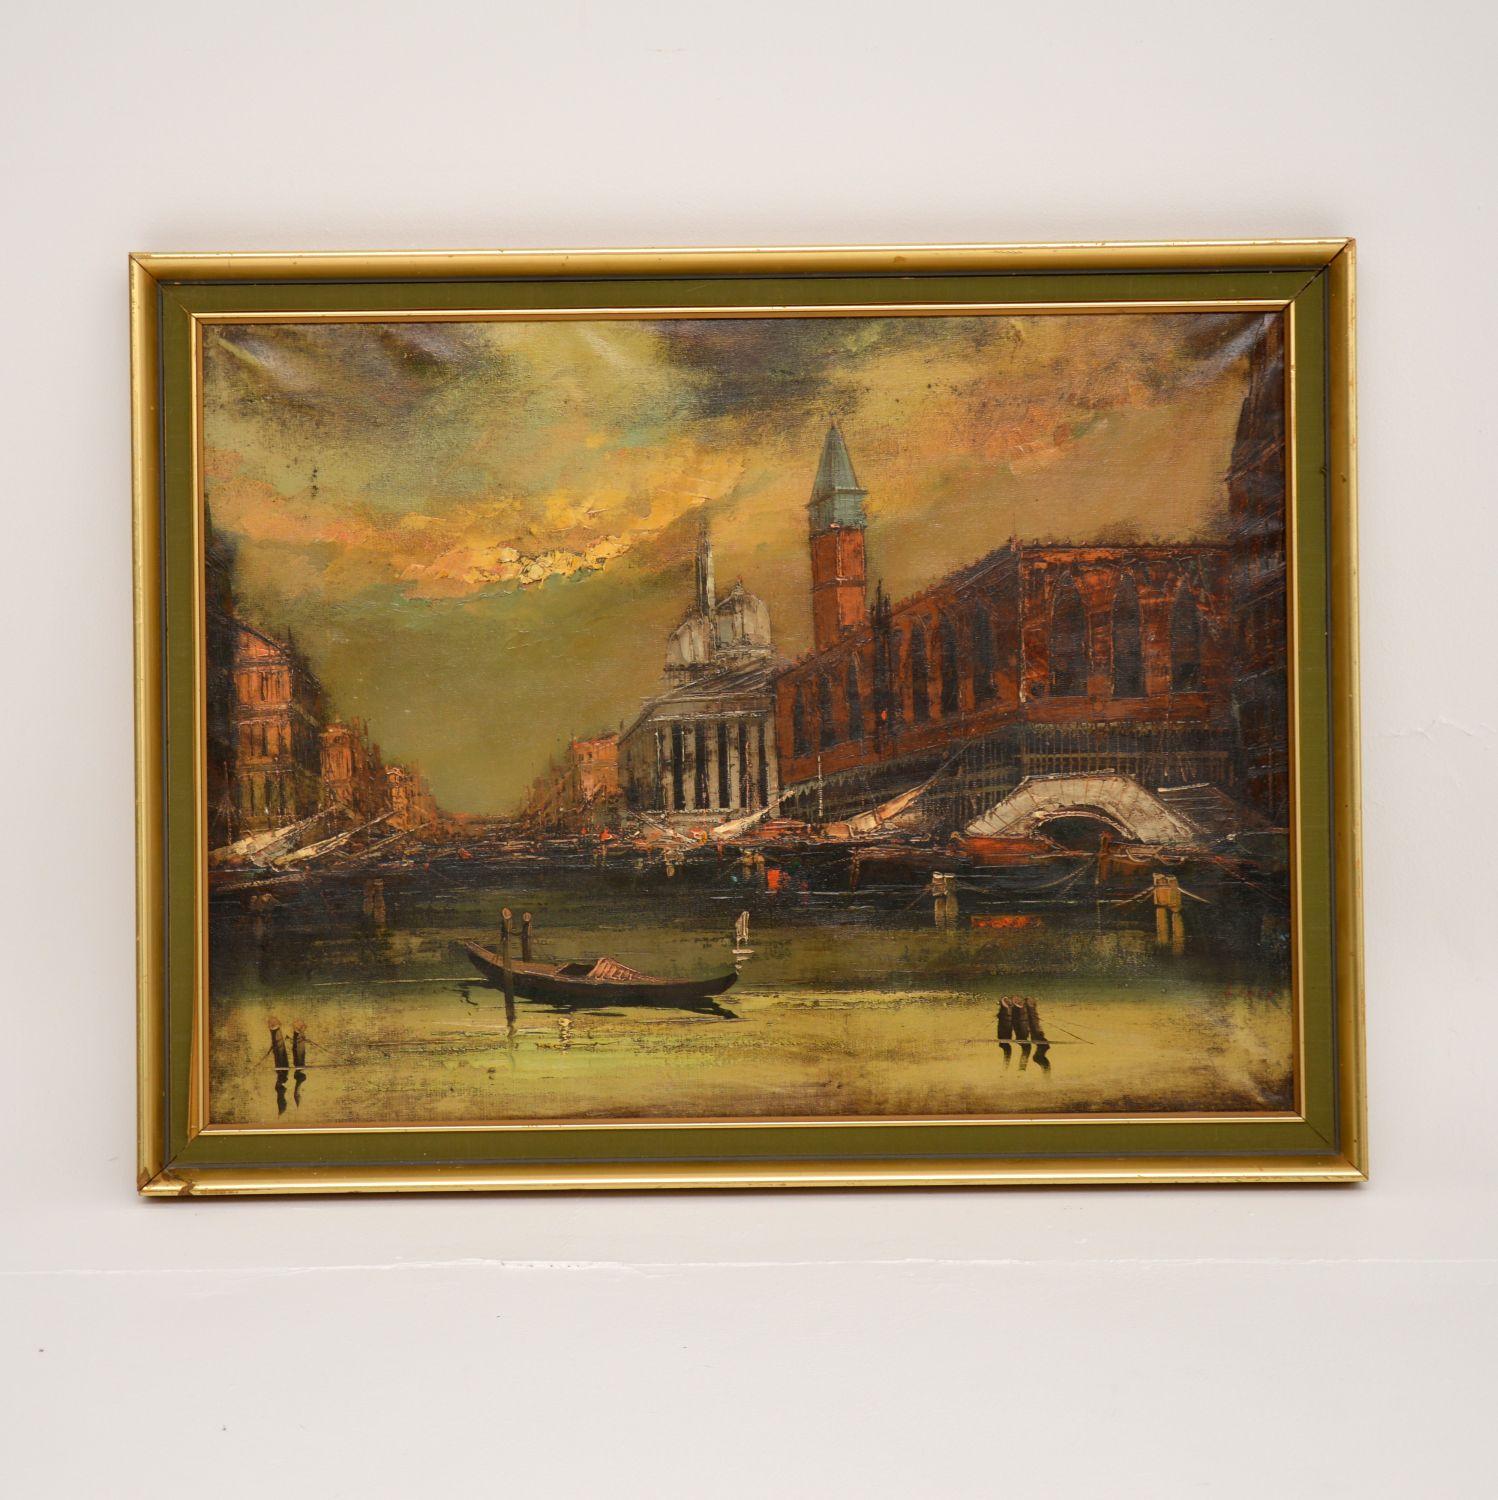 Une superbe peinture à l'huile vintage représentant un paysage de ce que je pense être Venise. Je dirais qu'il date du début ou du milieu du vingtième siècle.

Il est magnifiquement exécuté et de belle taille. Les tons de couleur et les techniques